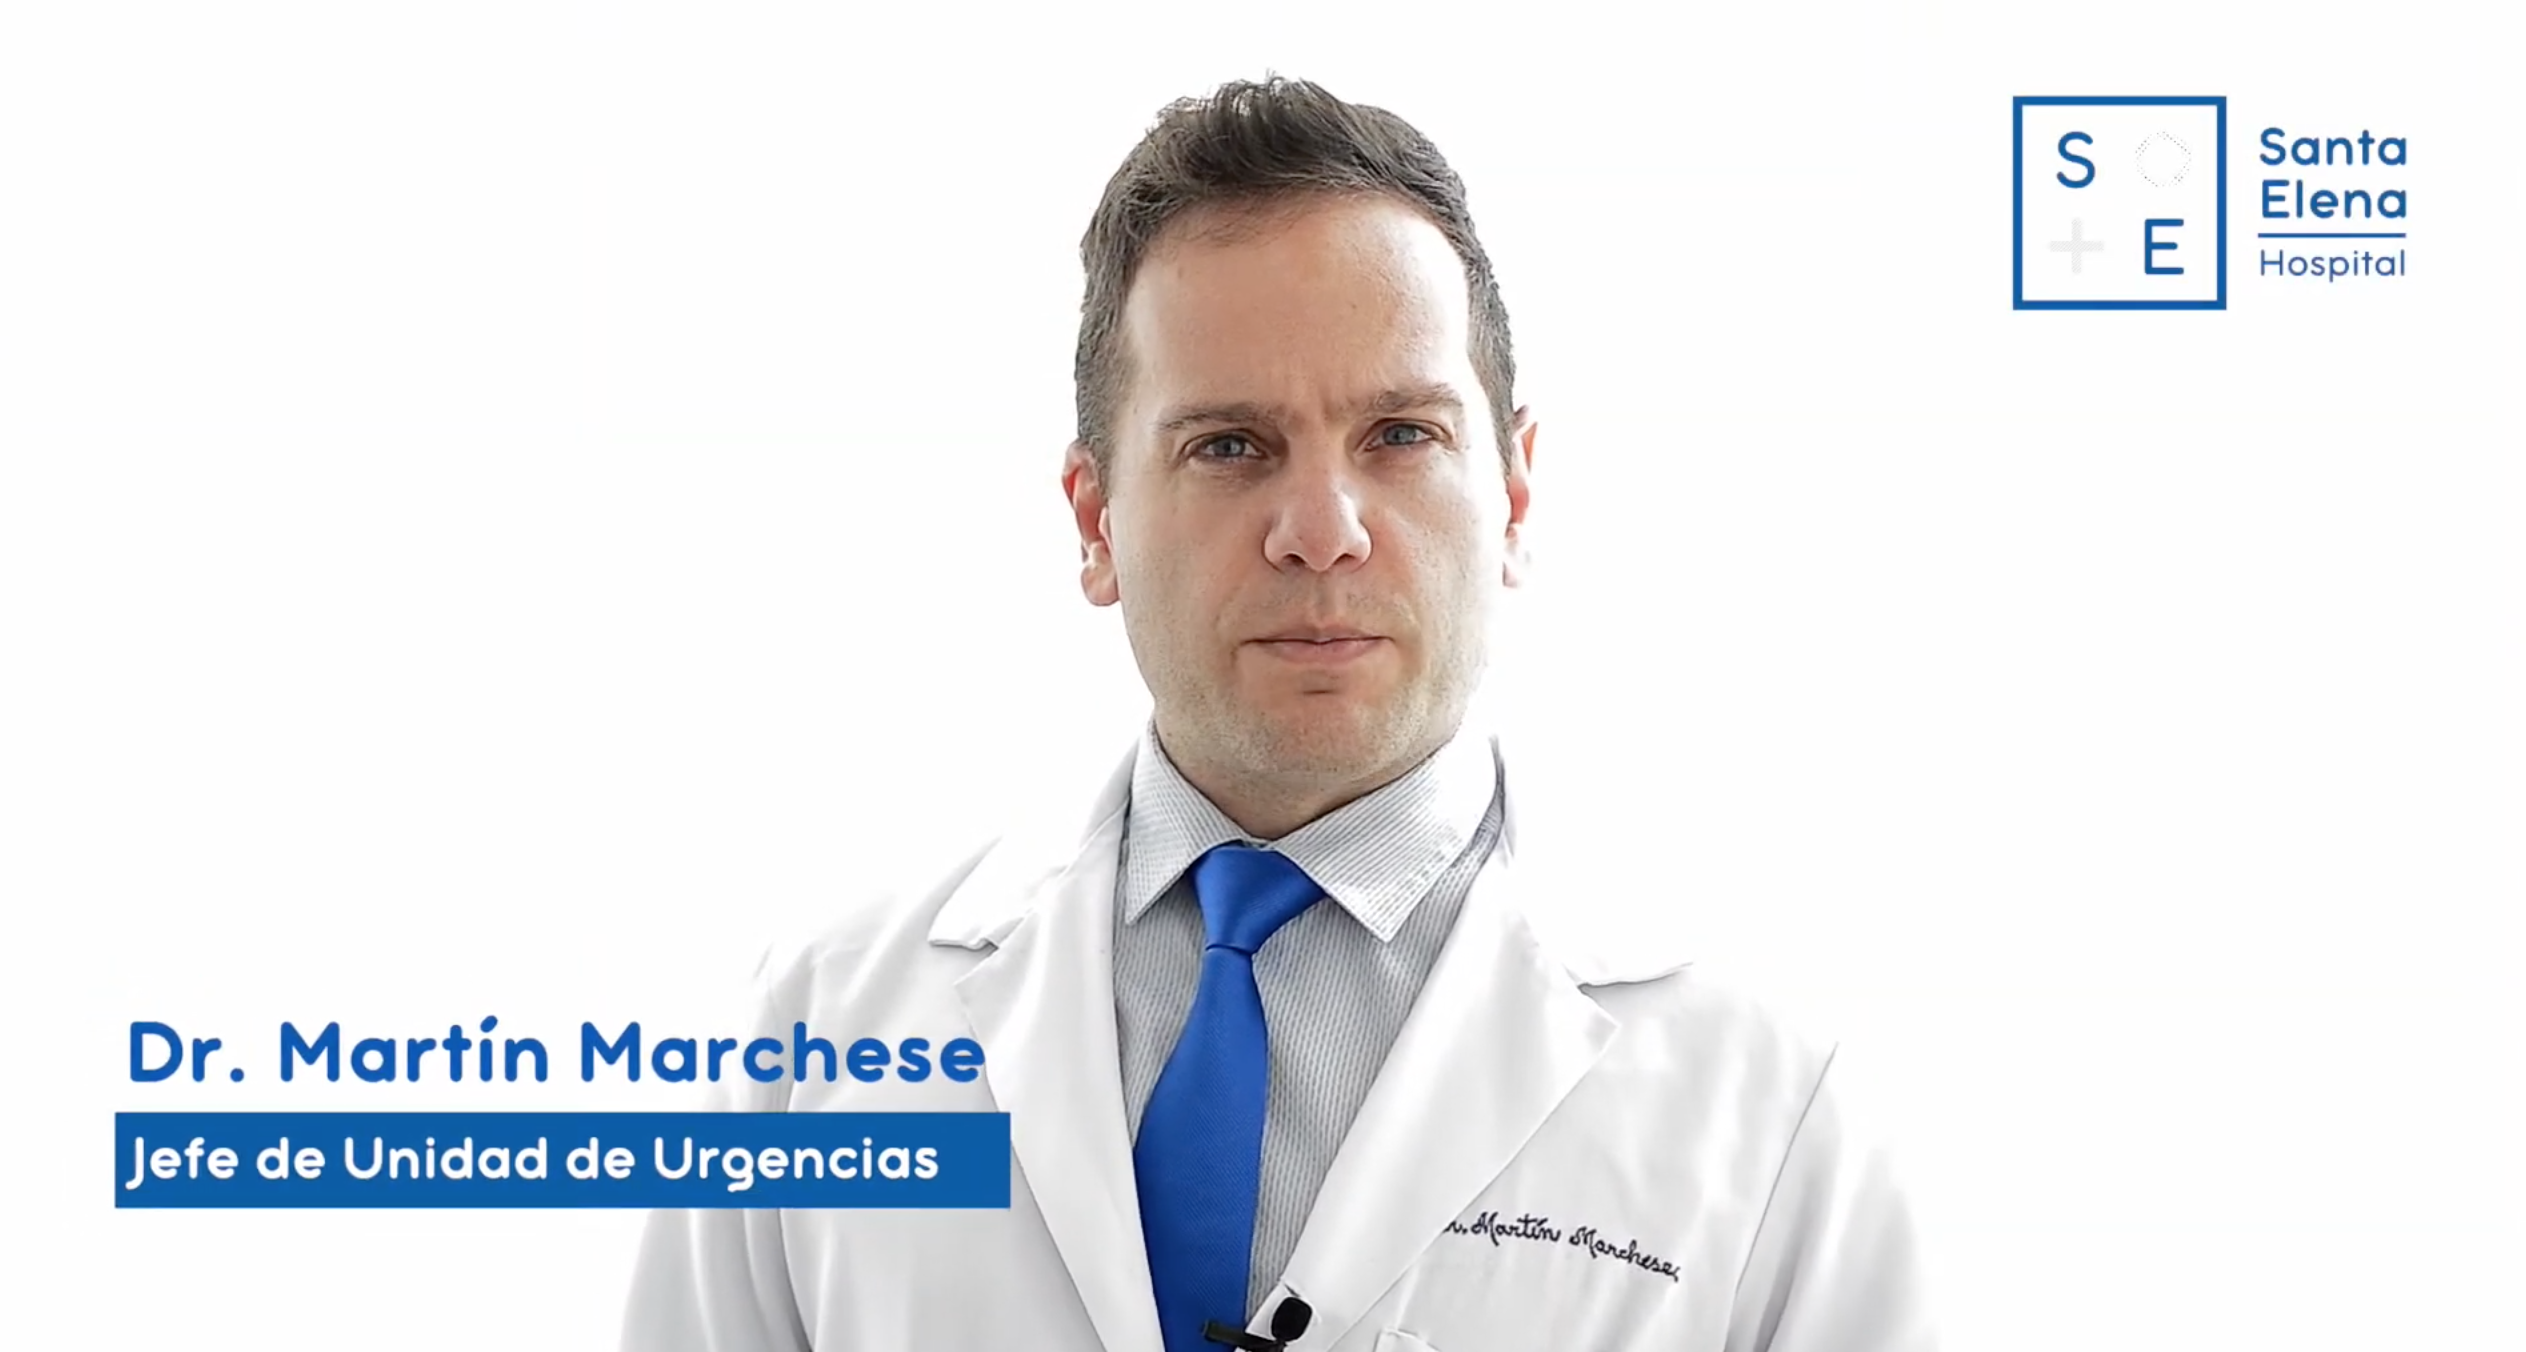 El servicio de Urgencias de Hospital Santa por el Dr. Martín Marchese